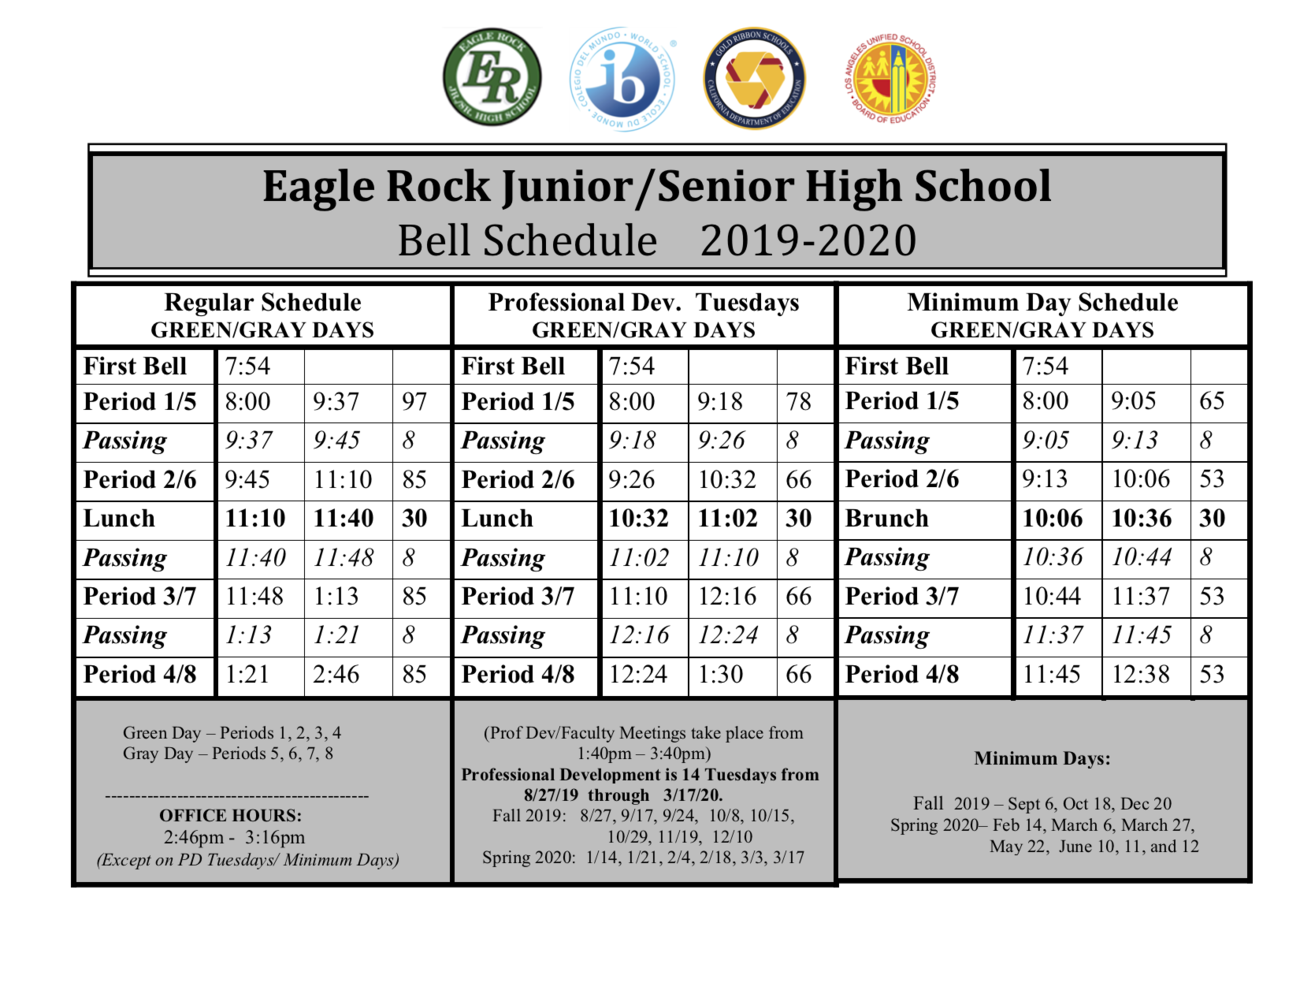  Eagle Rock Jr./Sr. High School